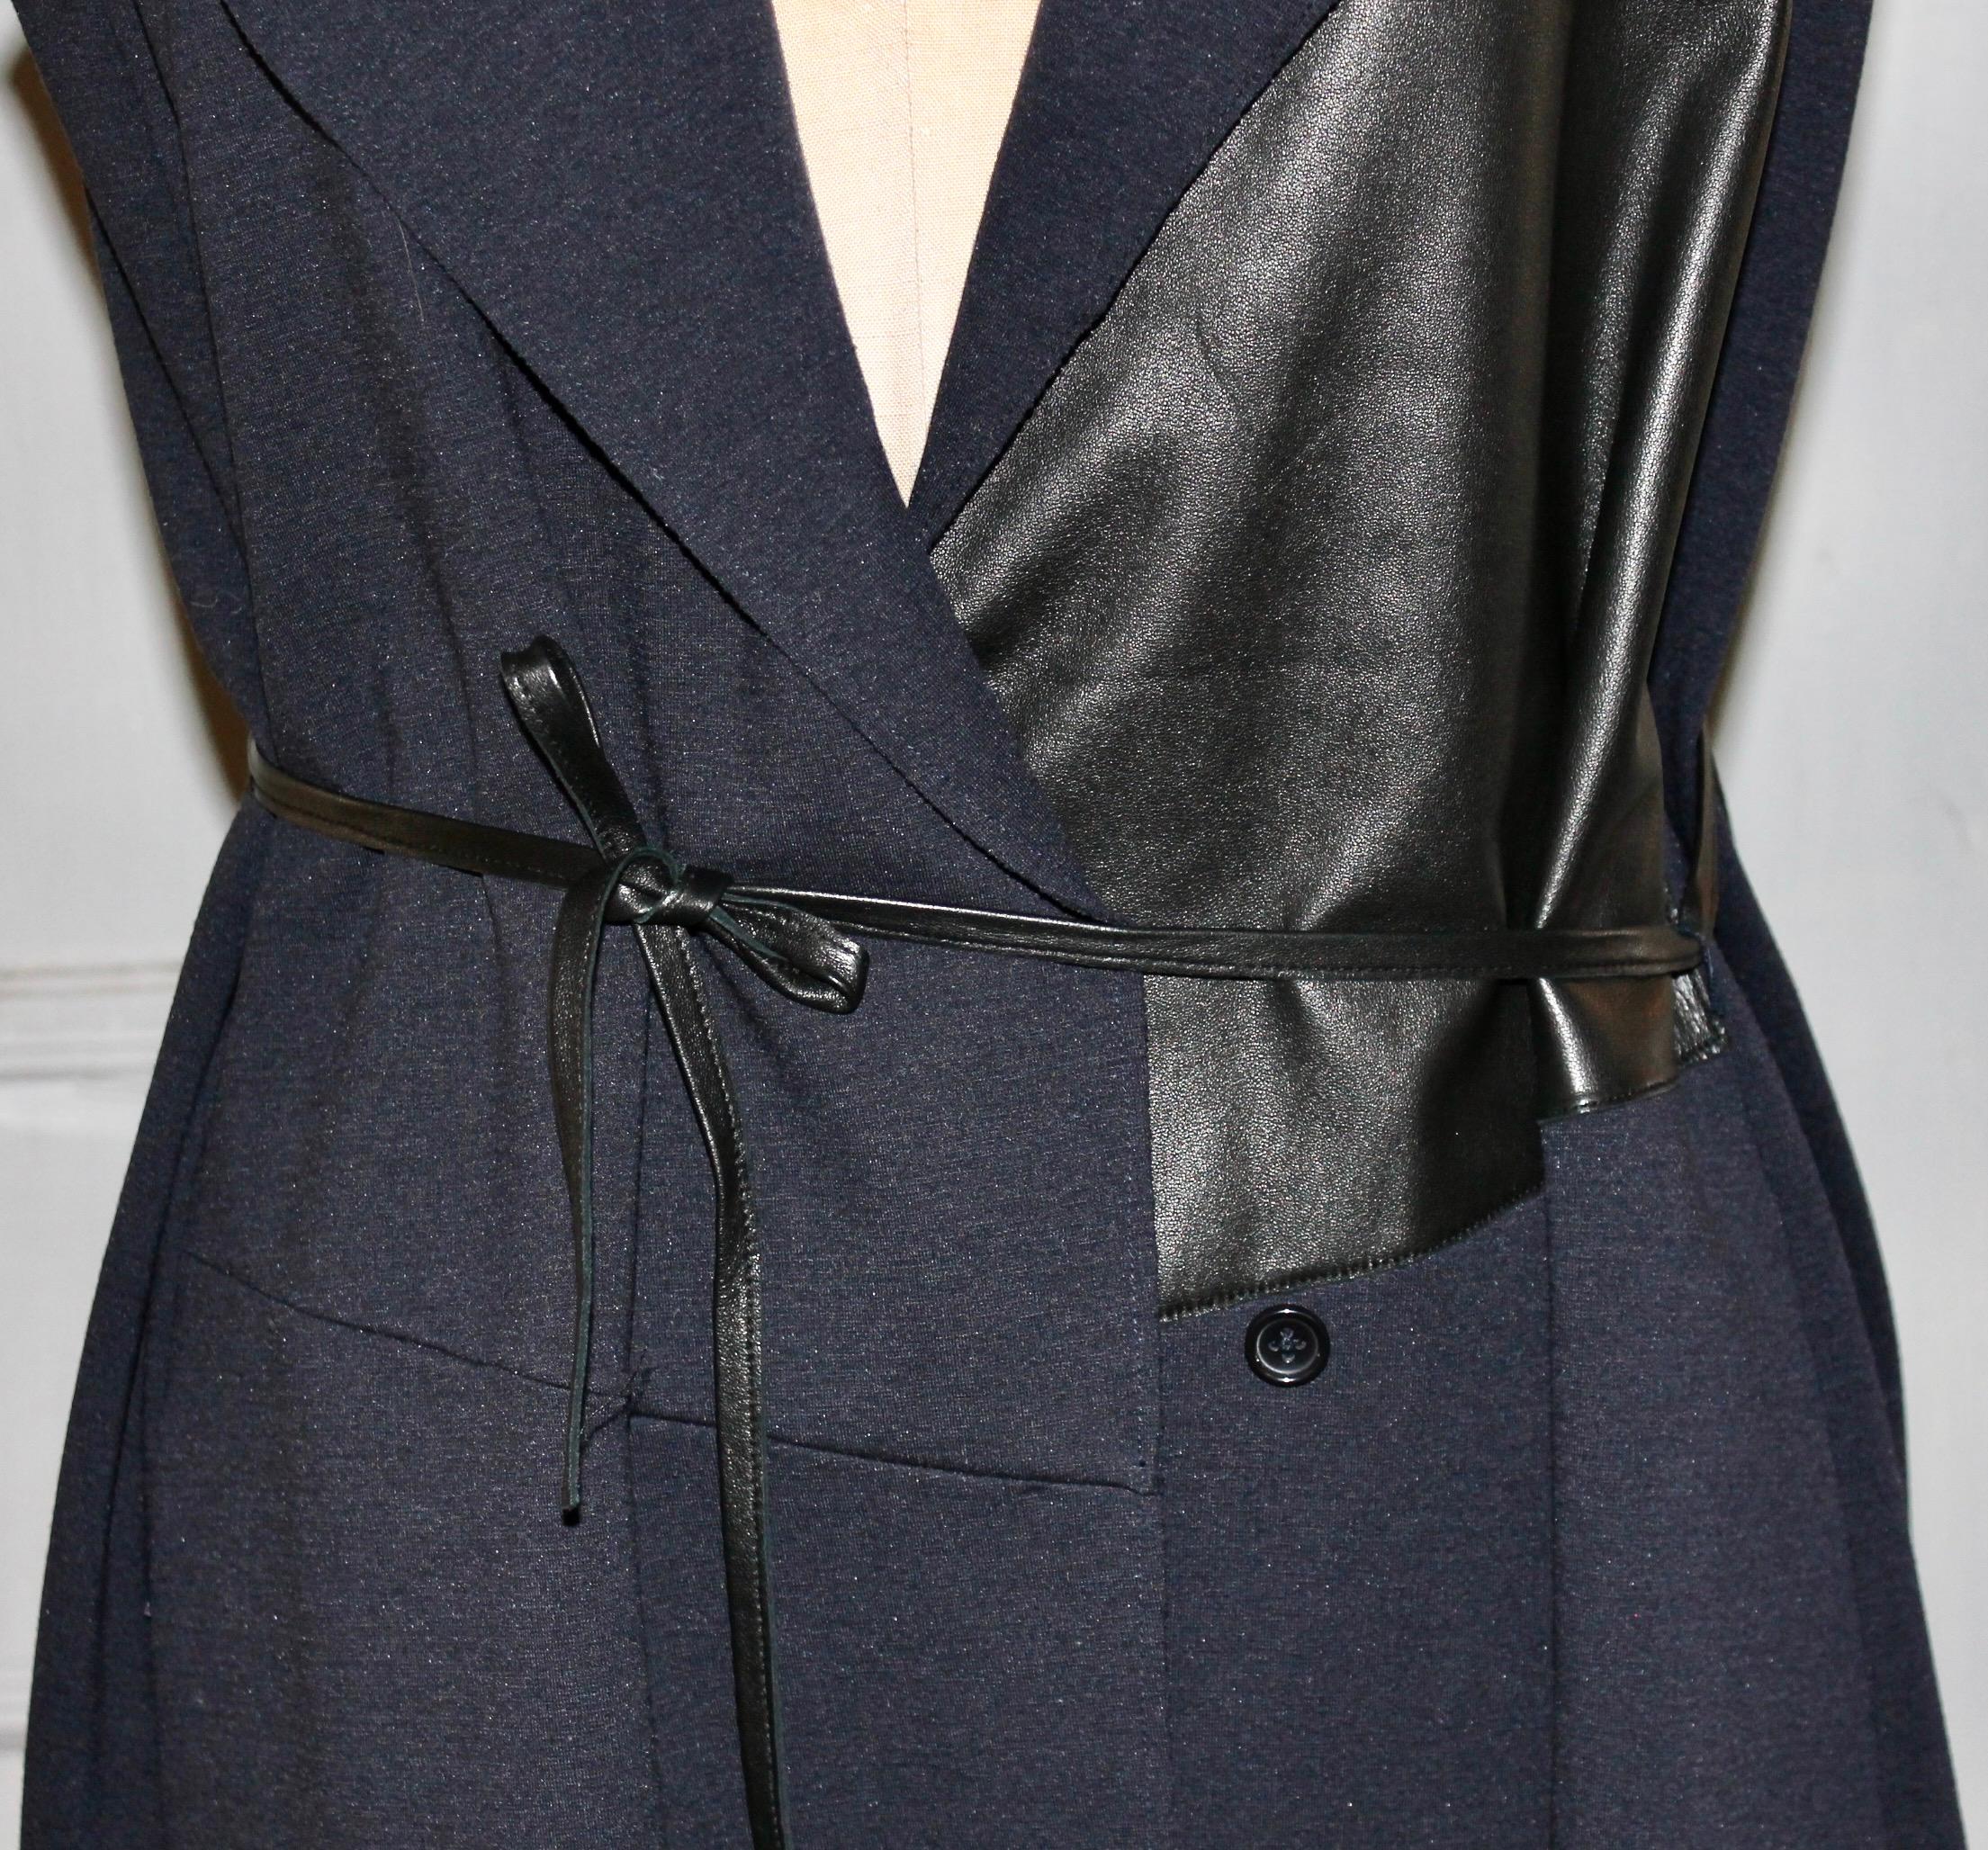 Magnifique robe-manteau avant gardiste en cuir et laine mélangés, de couleur noire. 